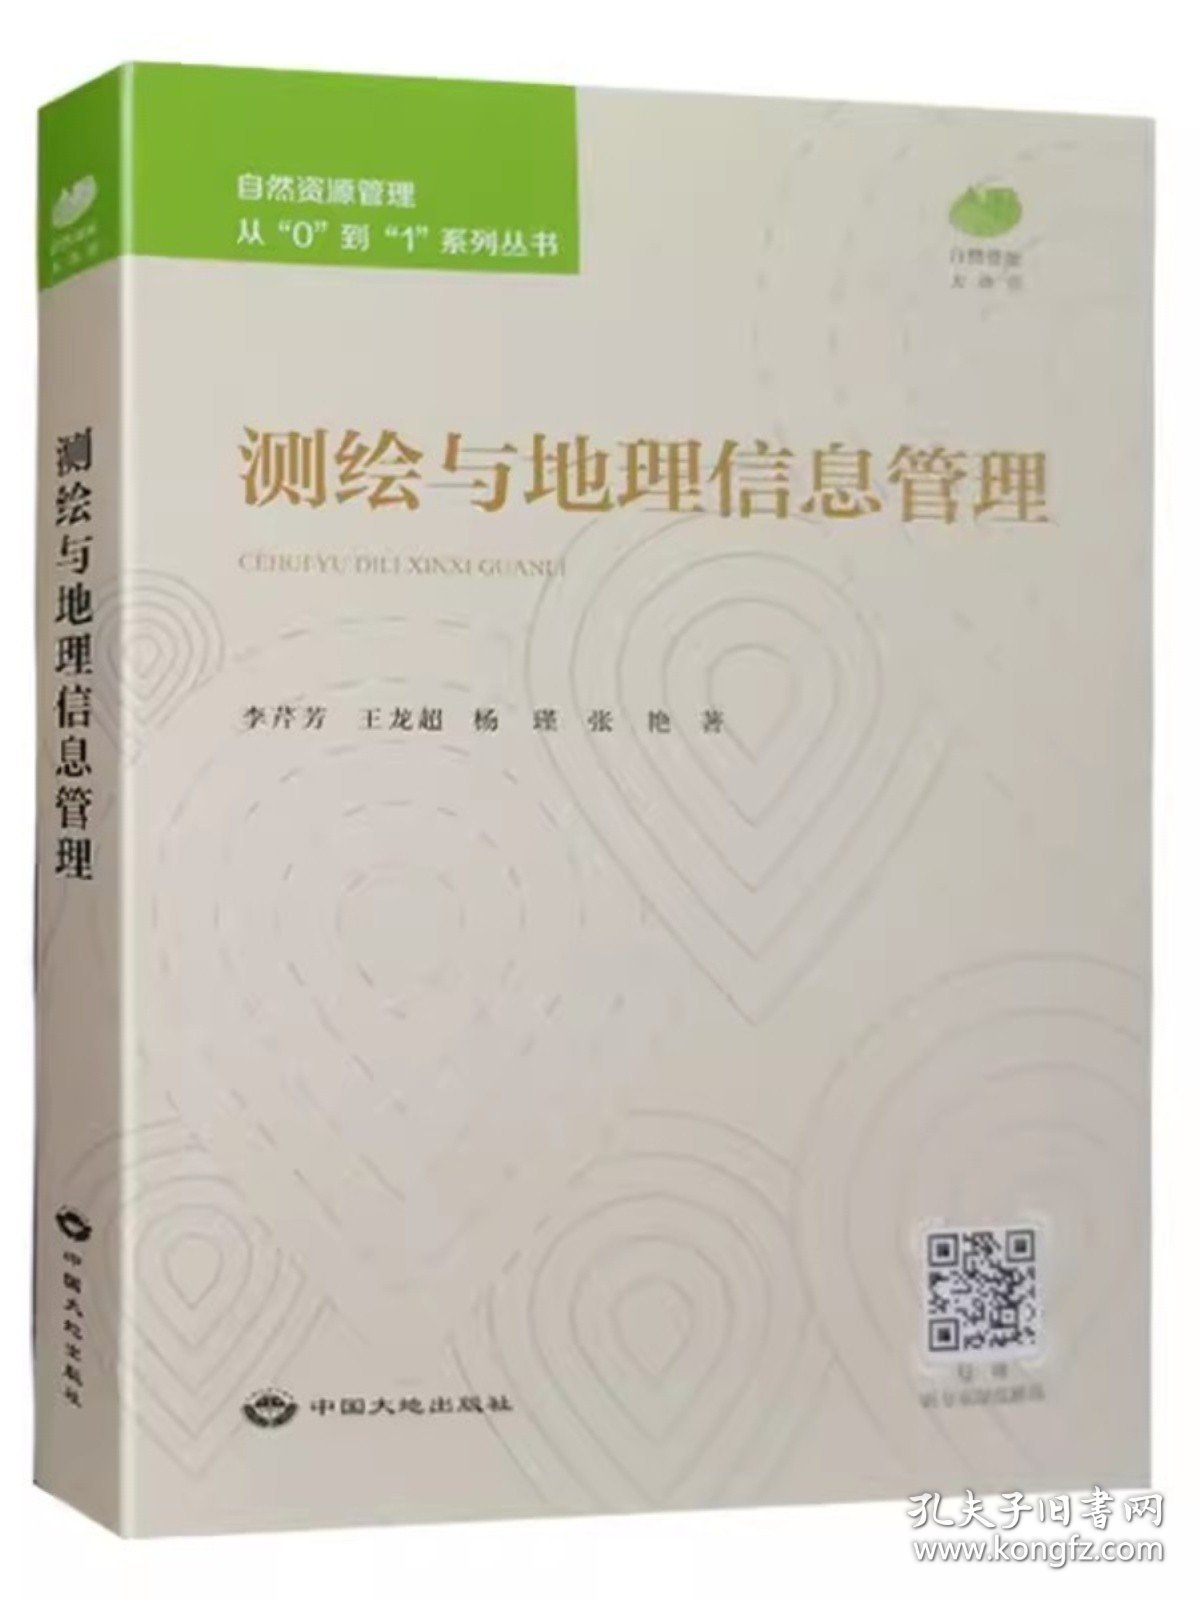 全新正版 测绘与地理信息管理 自然资源管理从0到1系列丛书 中国大地出版社